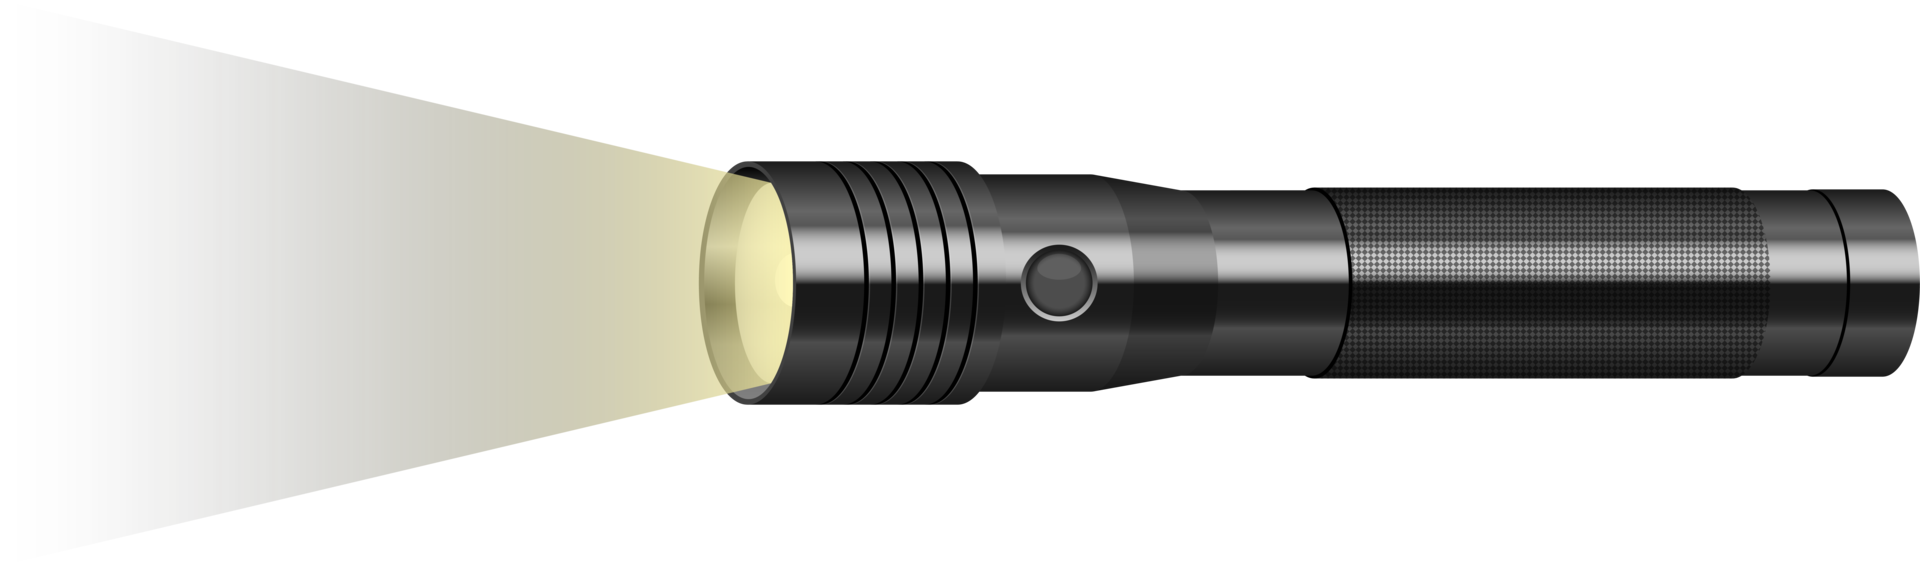 Taschenlampe-Clipart-Design-Illustration png